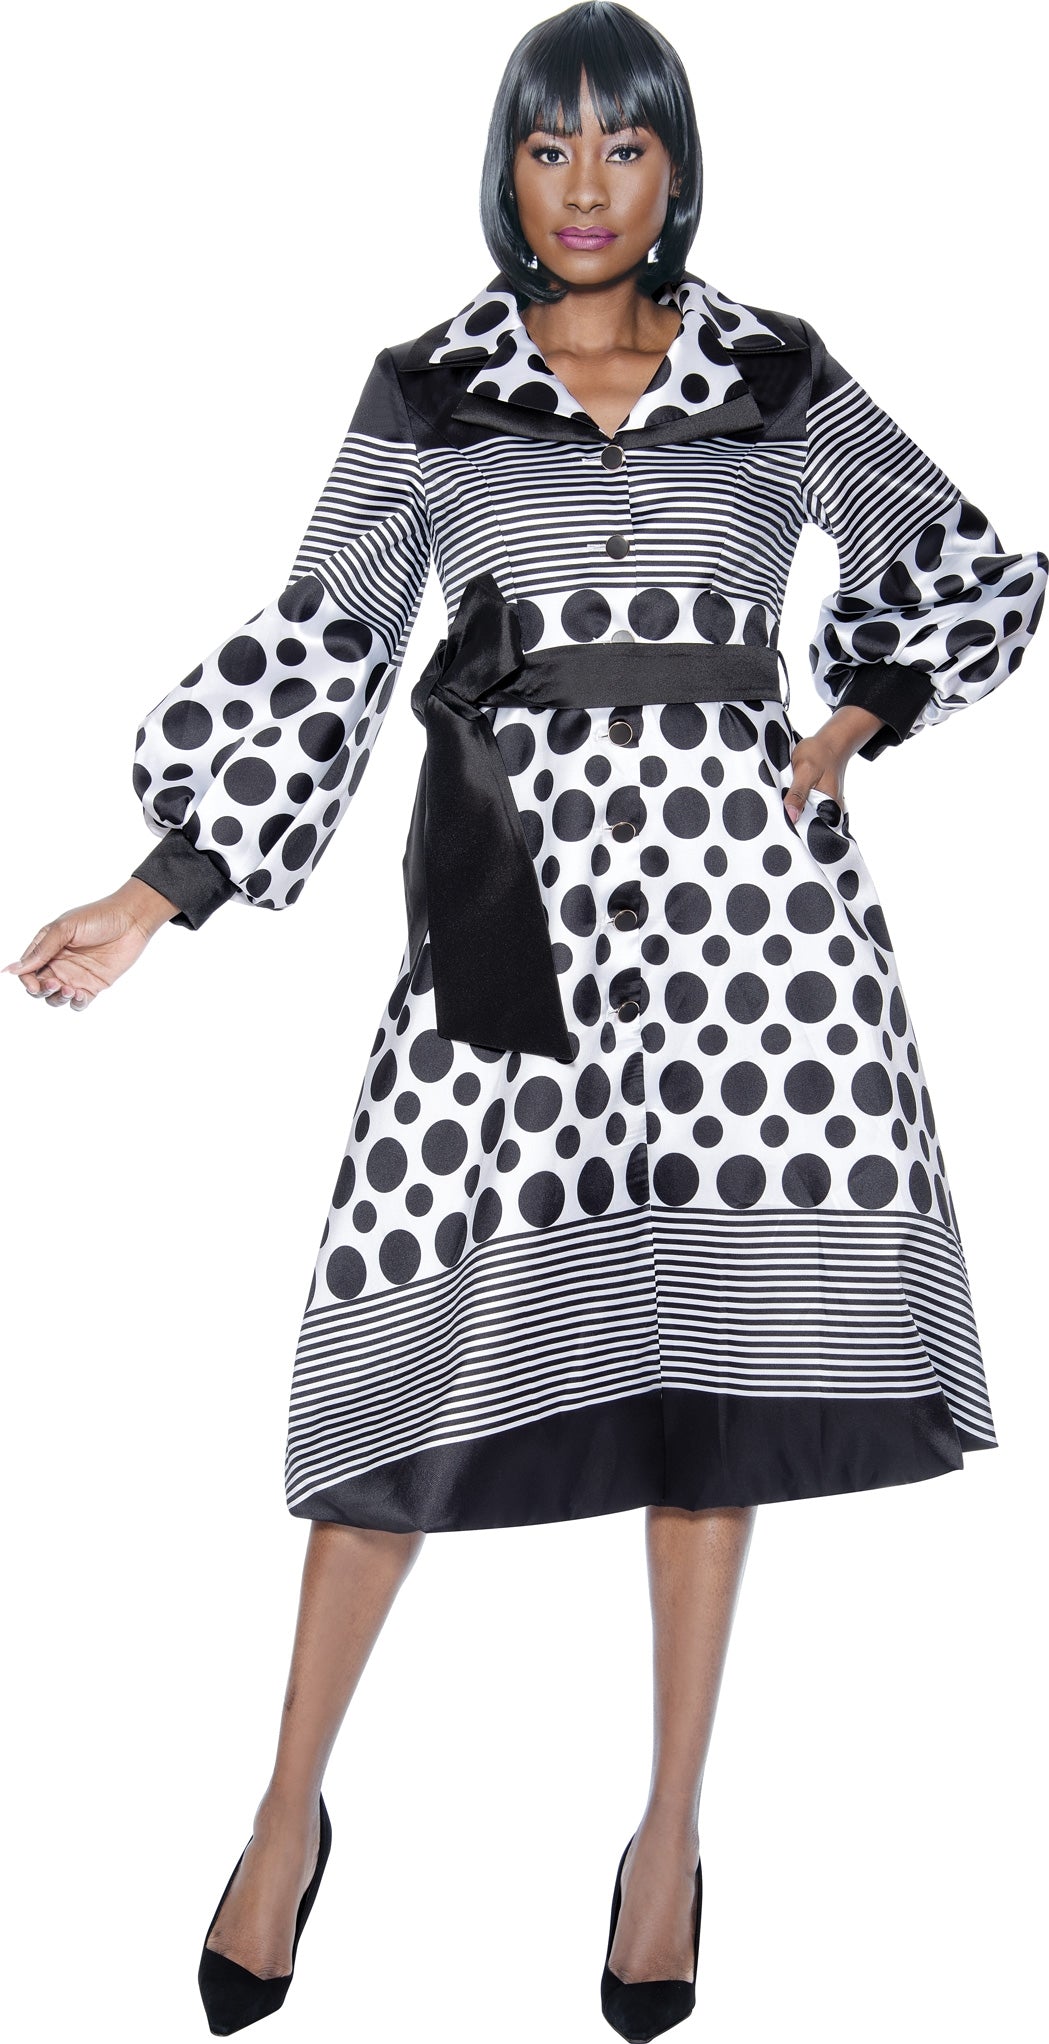 Terramina Church Dress 7052-Black/White - Church Suits For Less